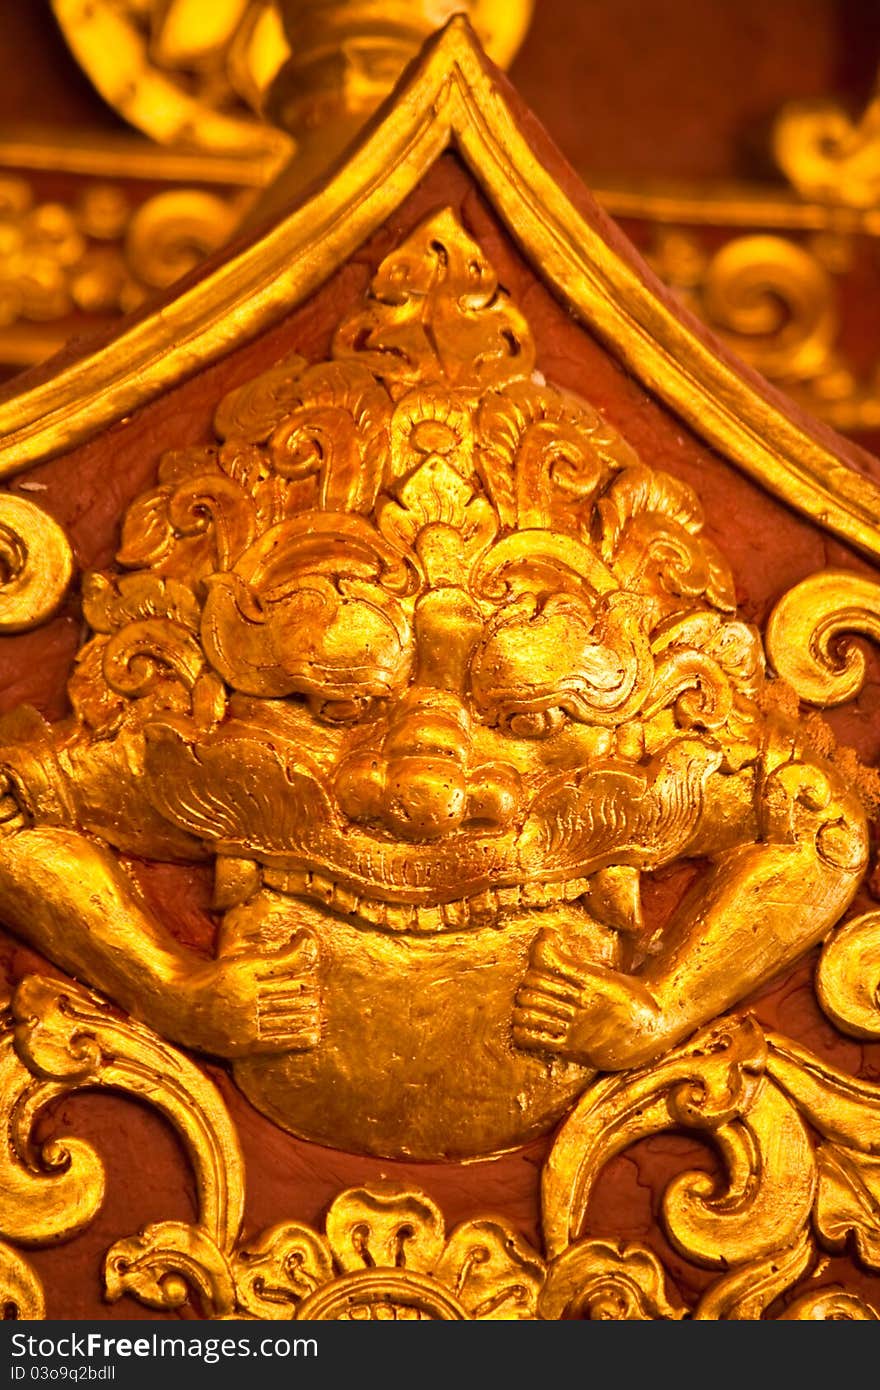 Golden art is a antique Thai art